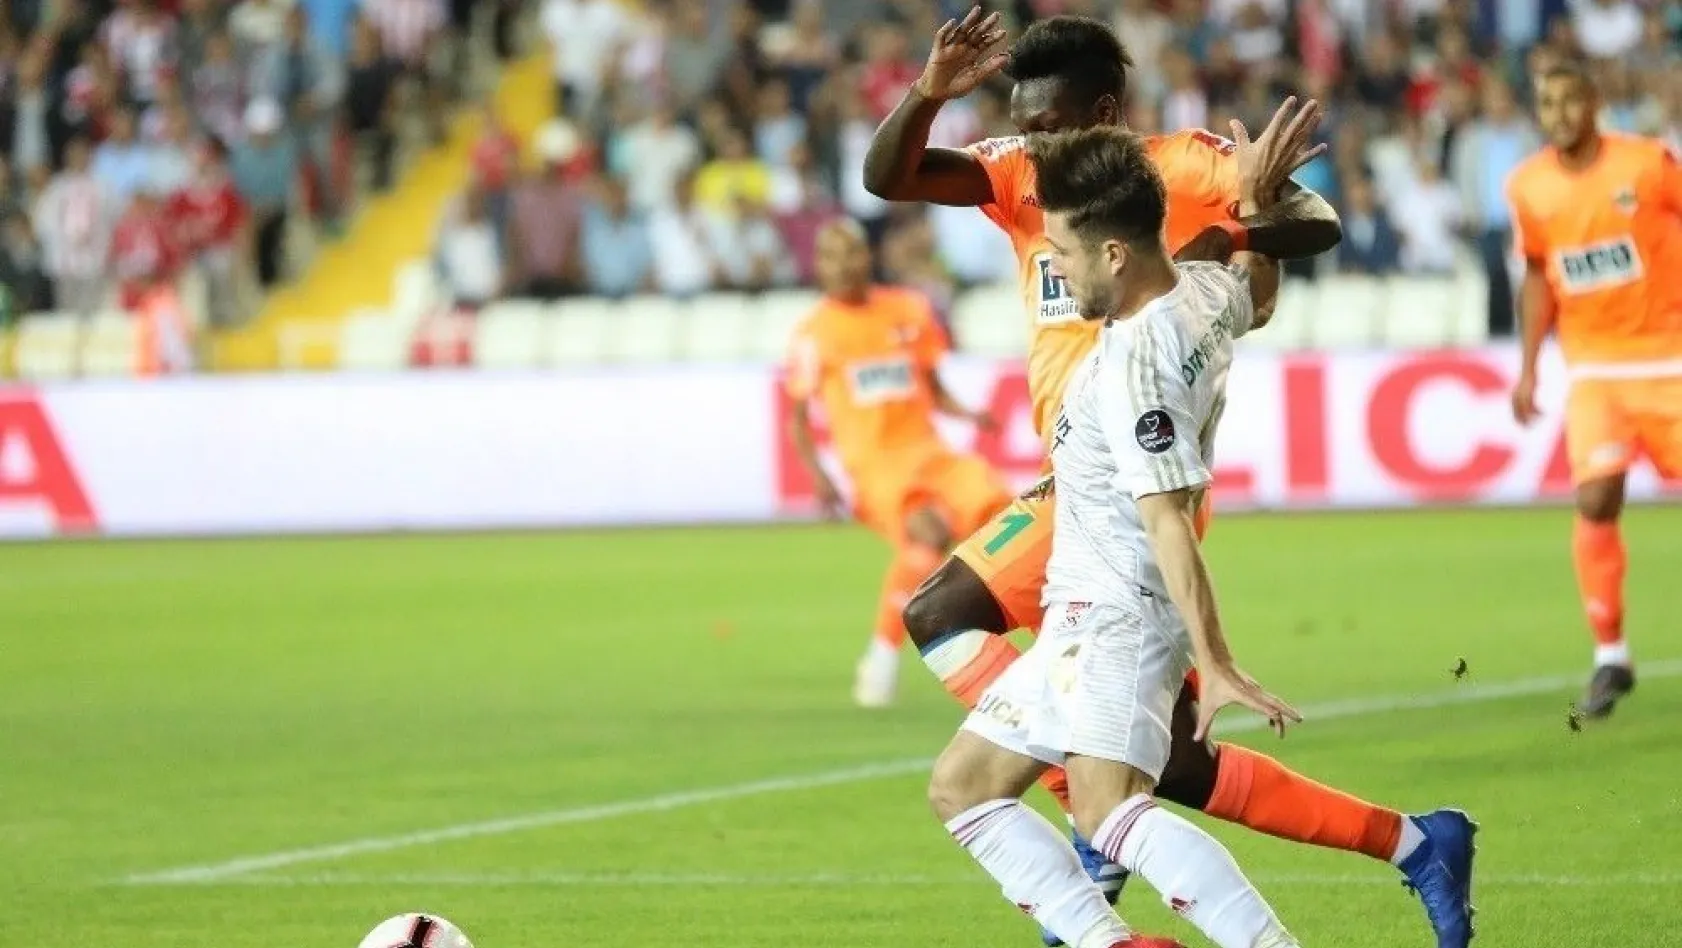 Spor Toto Süper Lig: Demir Grup Sivasspor: 0 - Aytemiz Alanyaspor: 0 (İlk yarı)
